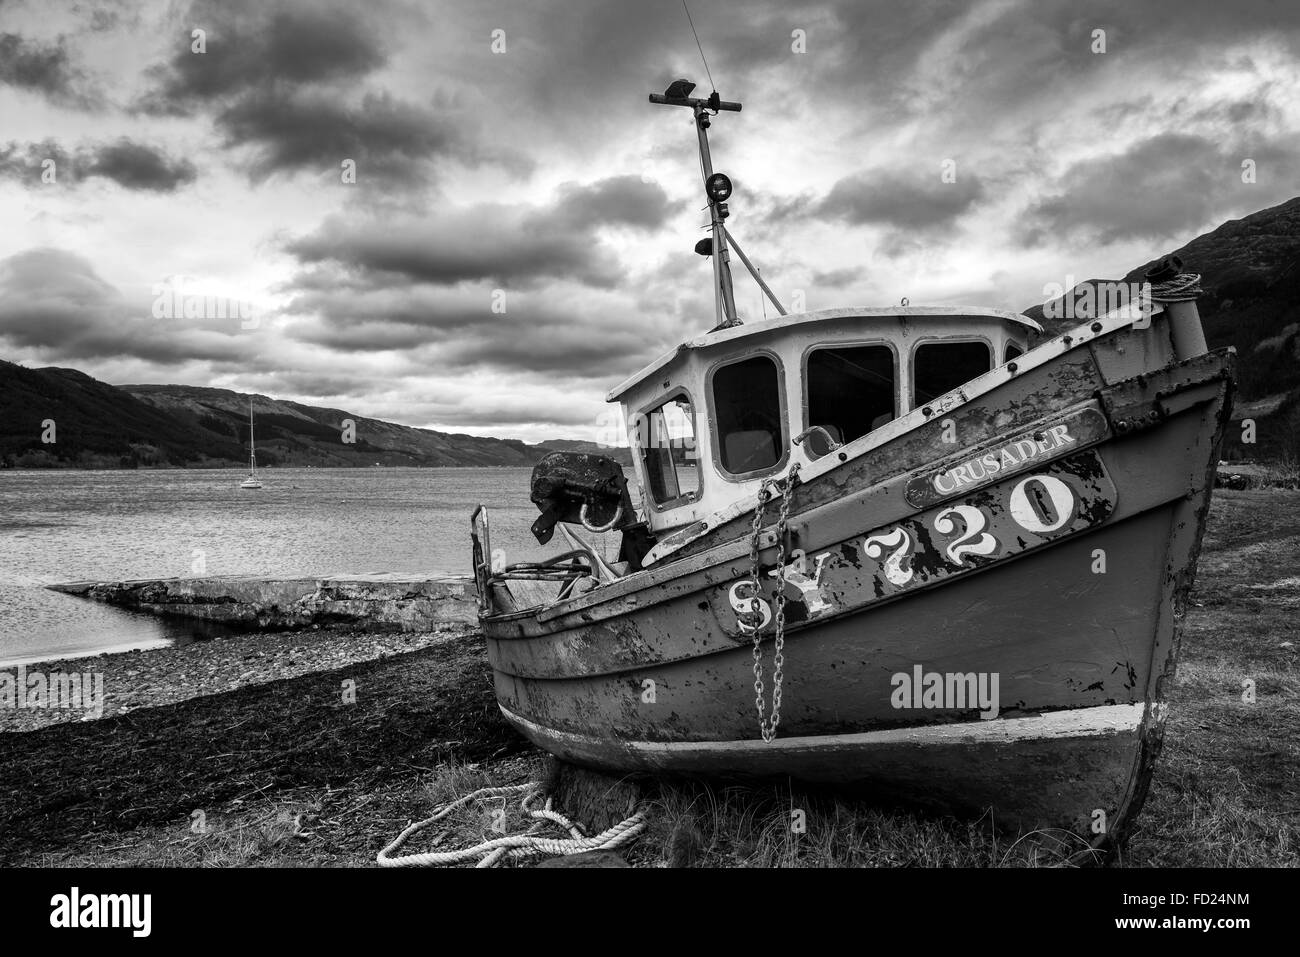 Un bateau sur la plage à Invershiel, sur les rives du Loch Duich dans les Highlands écossais, UK Banque D'Images